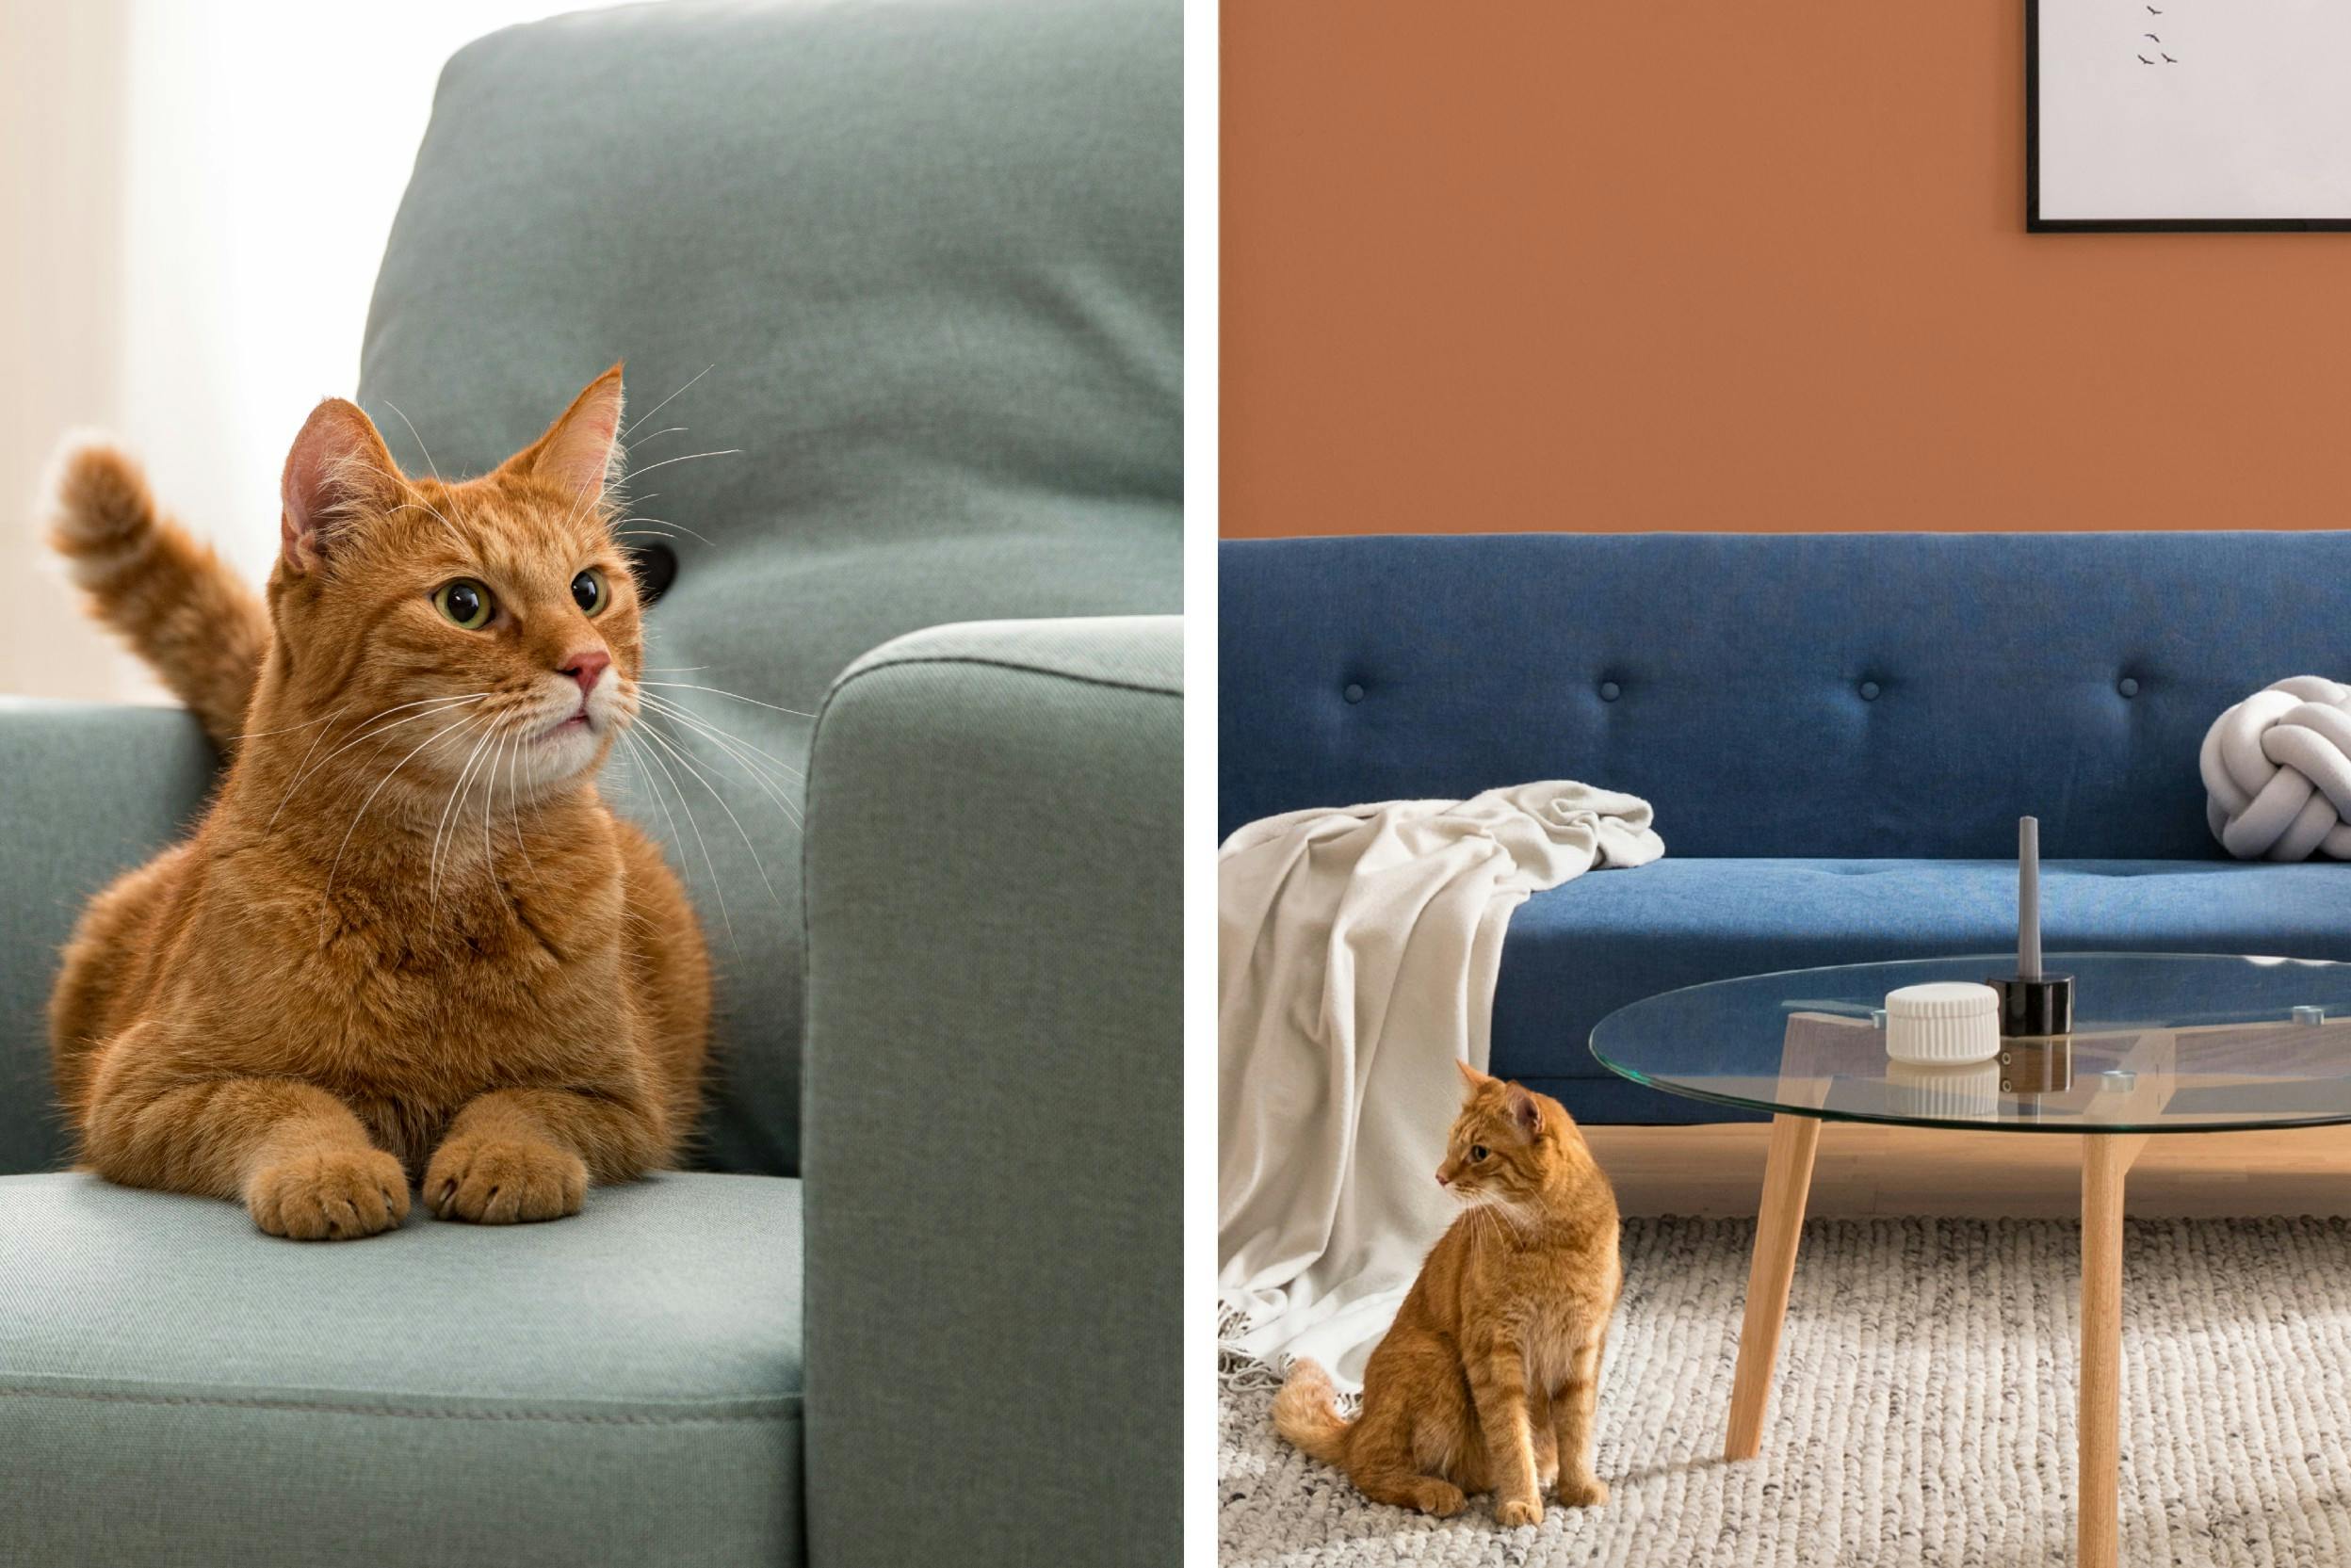 Chat roux sur un canapé; chat roux sur un tapis, près d'un canapé